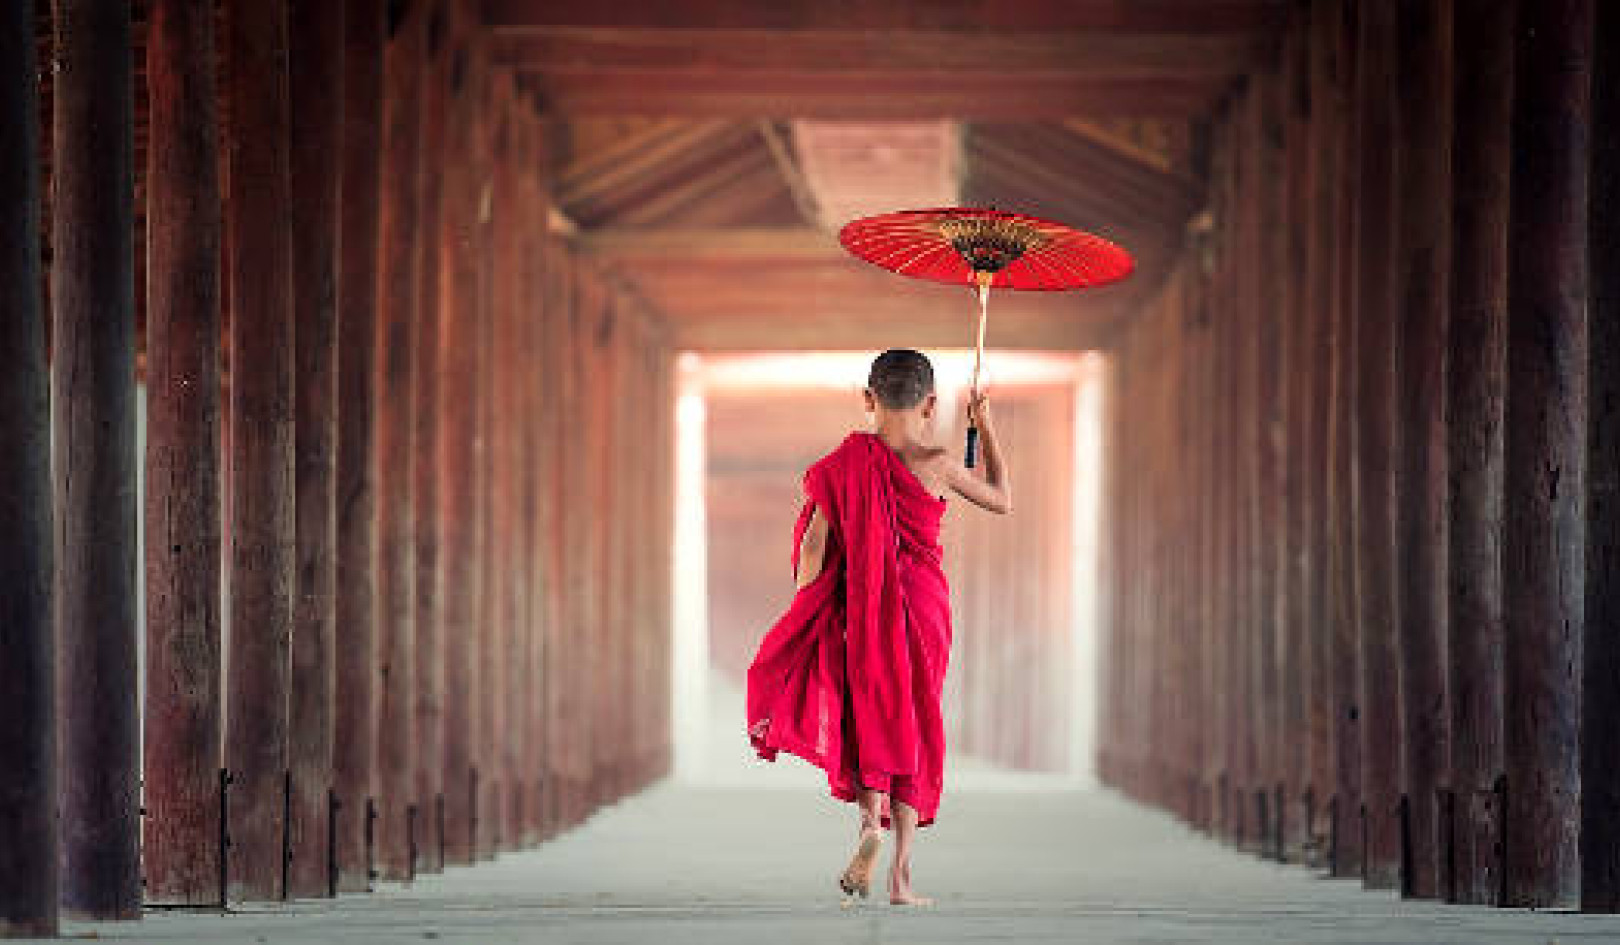 Leer die Boeddhistiese konsep van liefdevolle-vriendelikheid